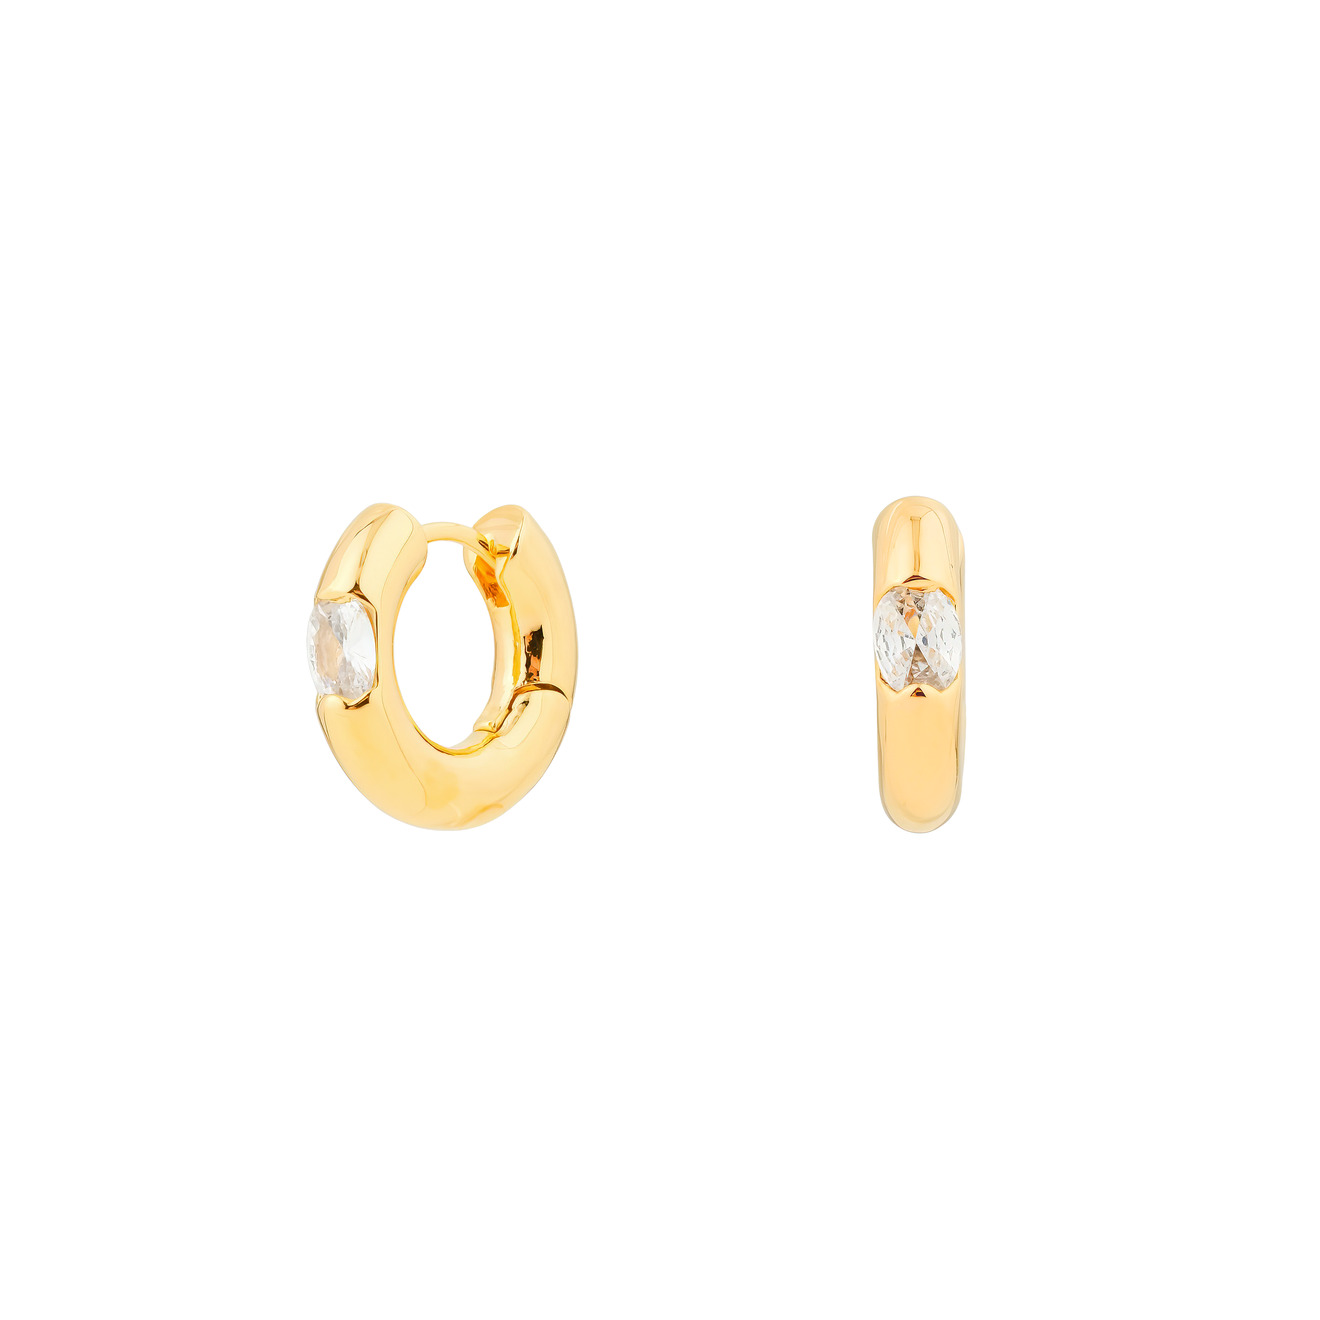 Herald Percy Золотистые дутые серьги-кольца с овальными кристаллами herald percy золотистые серьги полукруги с кристаллами